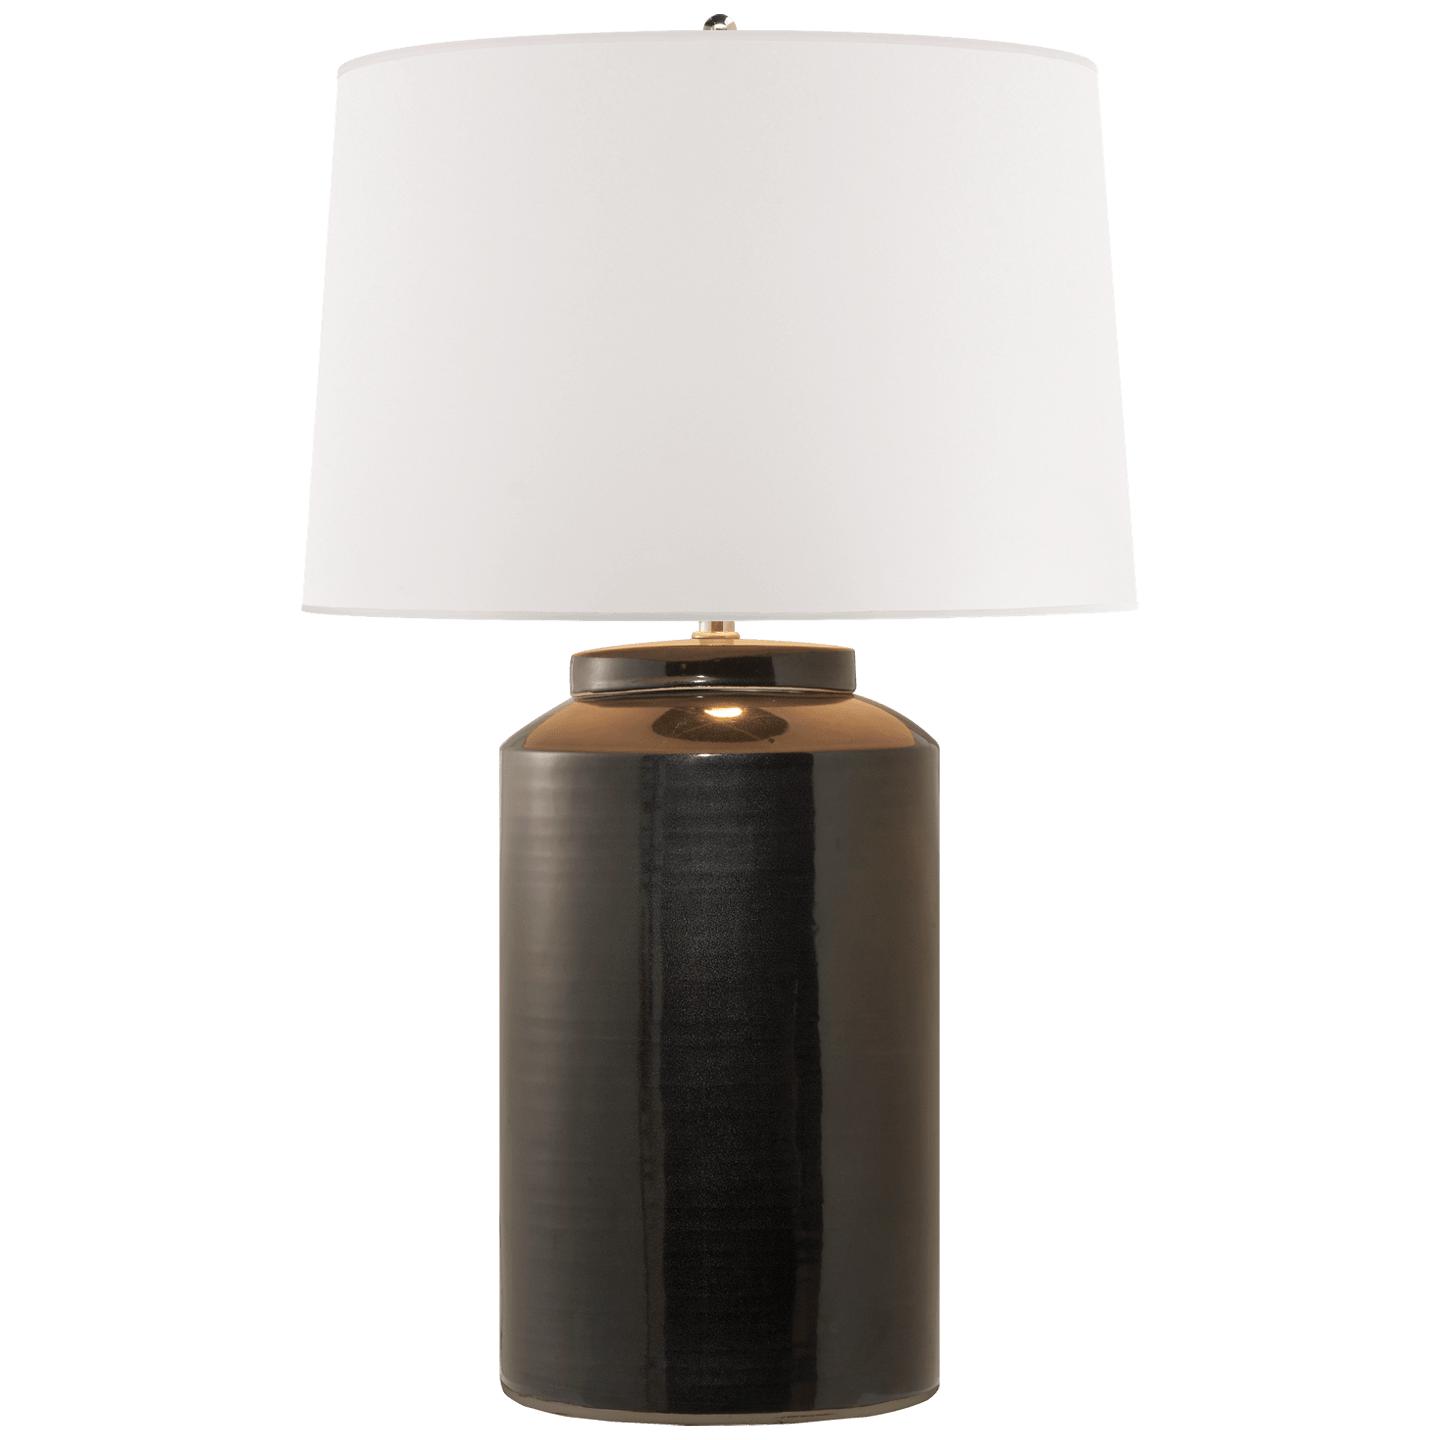 Купить Настольная лампа Carter Large Table Lamp в интернет-магазине roooms.ru